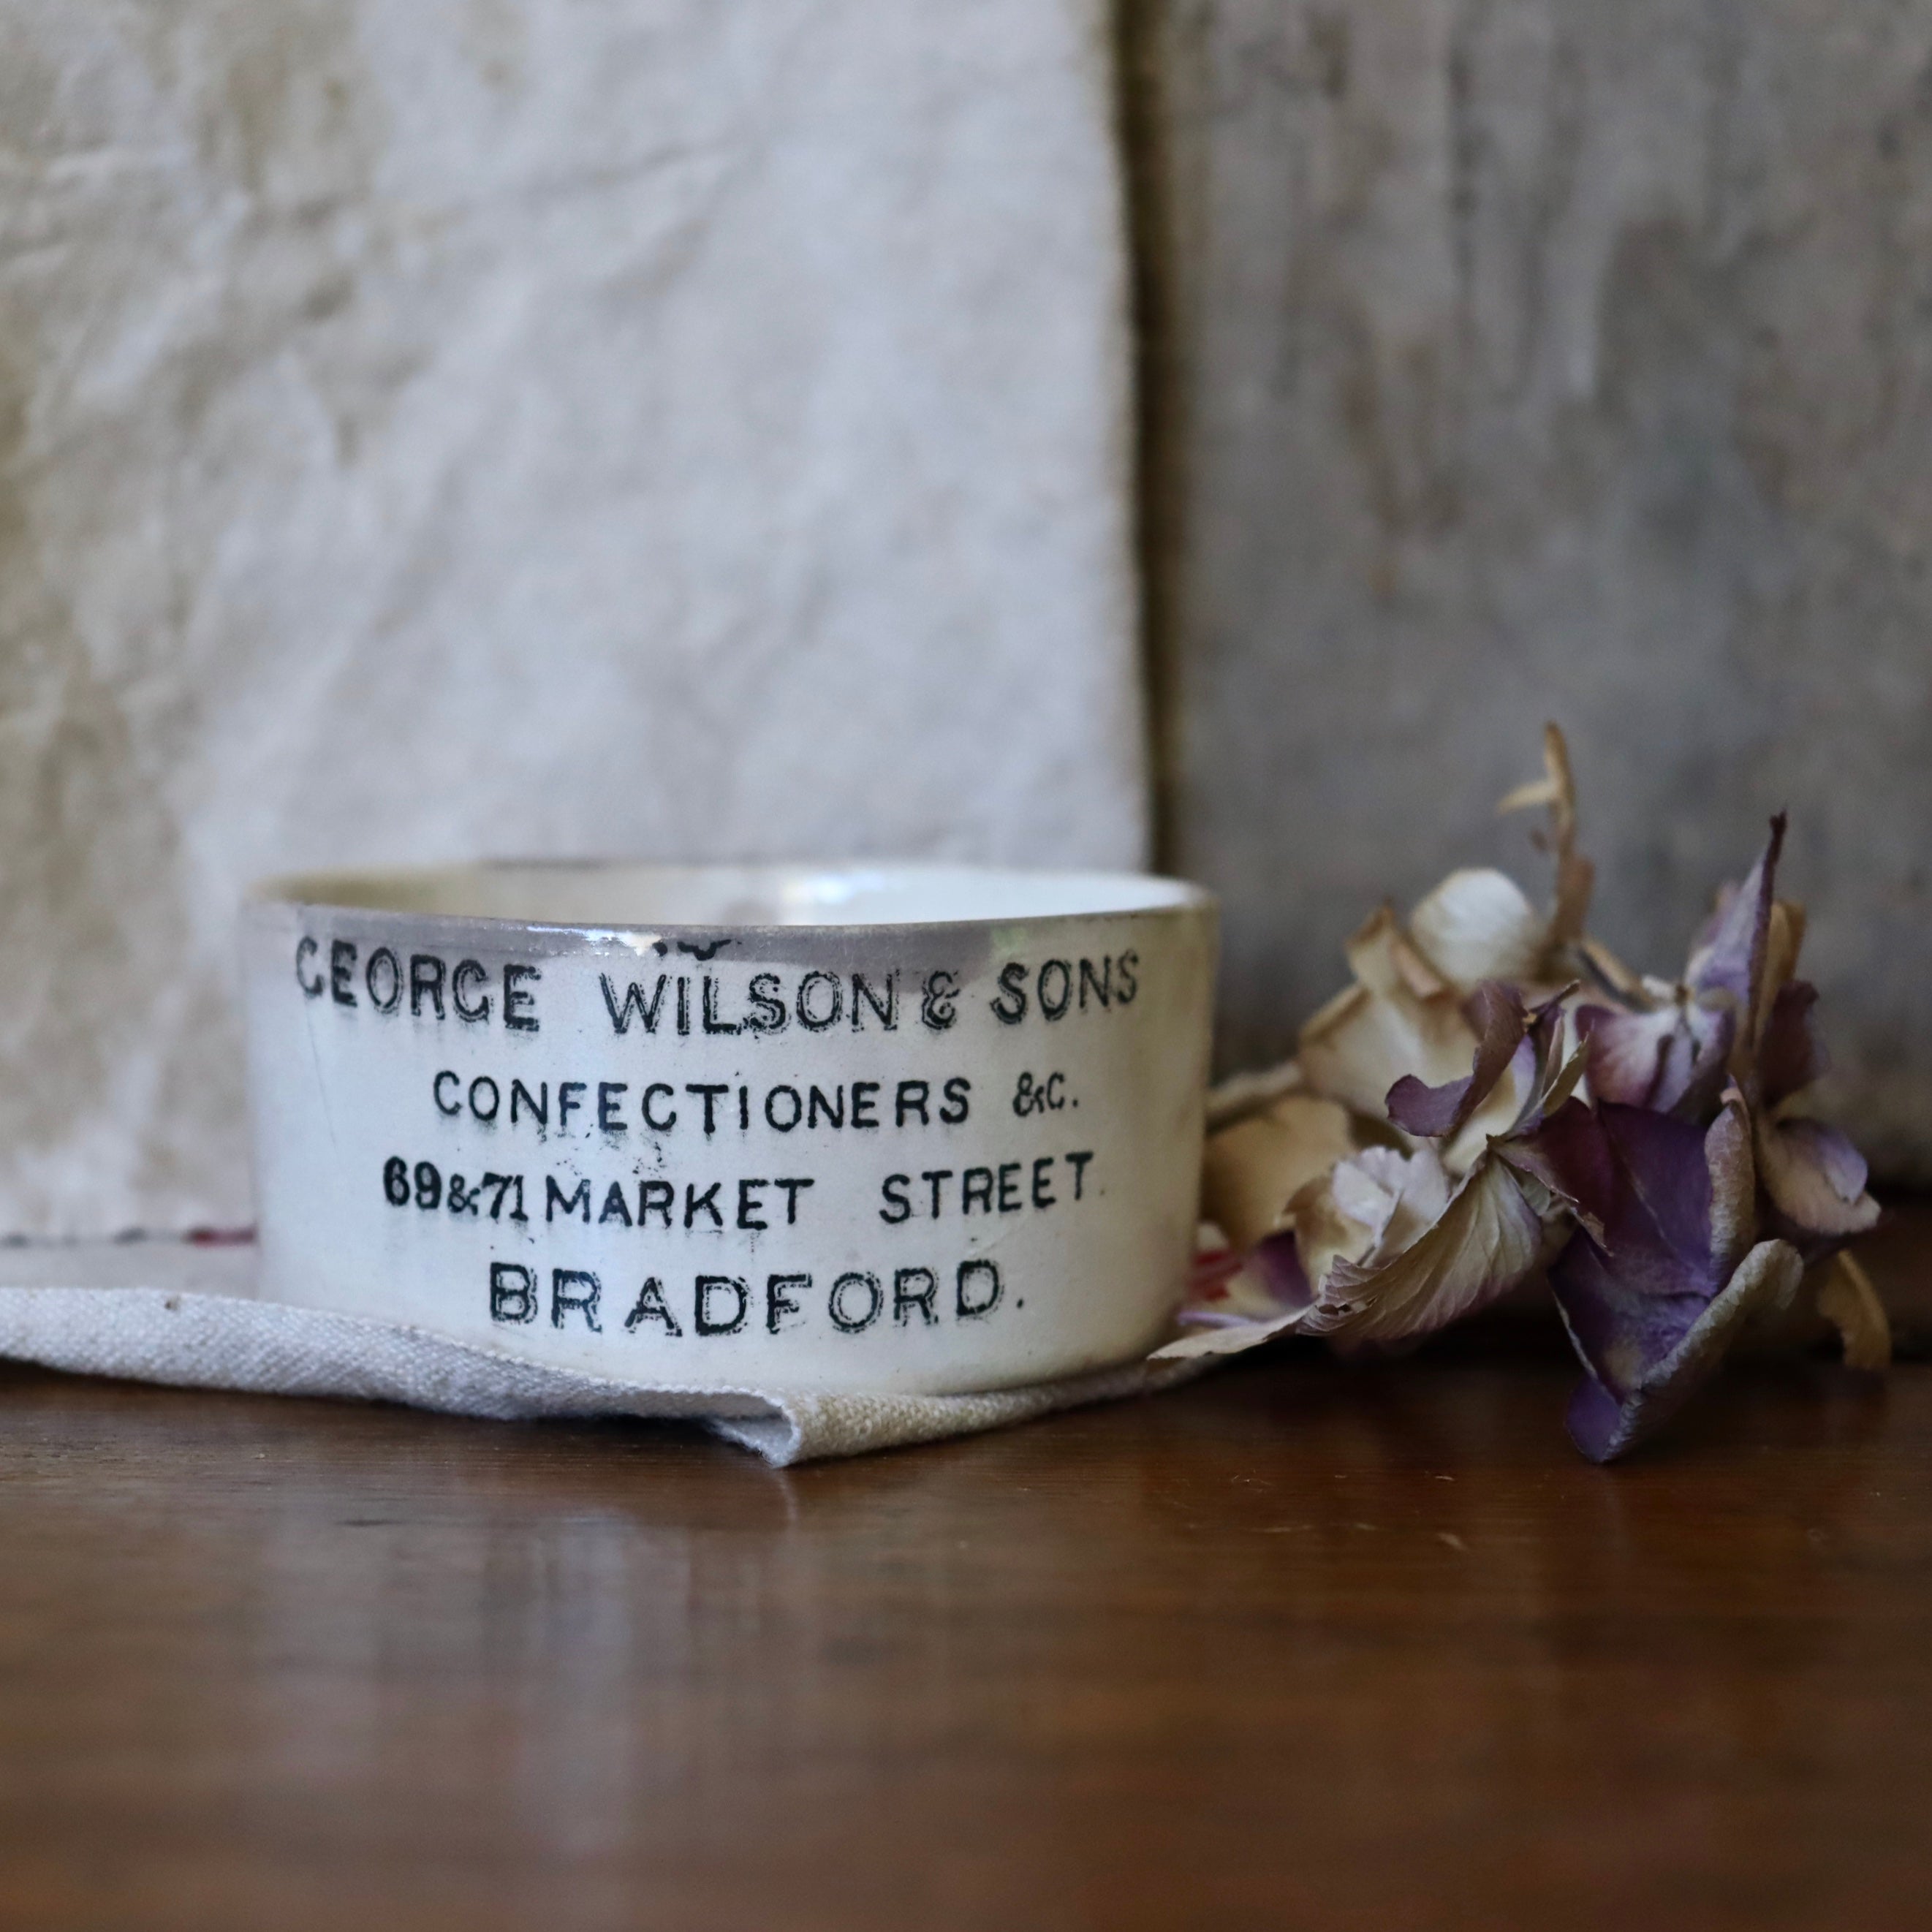 Antique George Wilson & Sons Confectioners & C. Pot